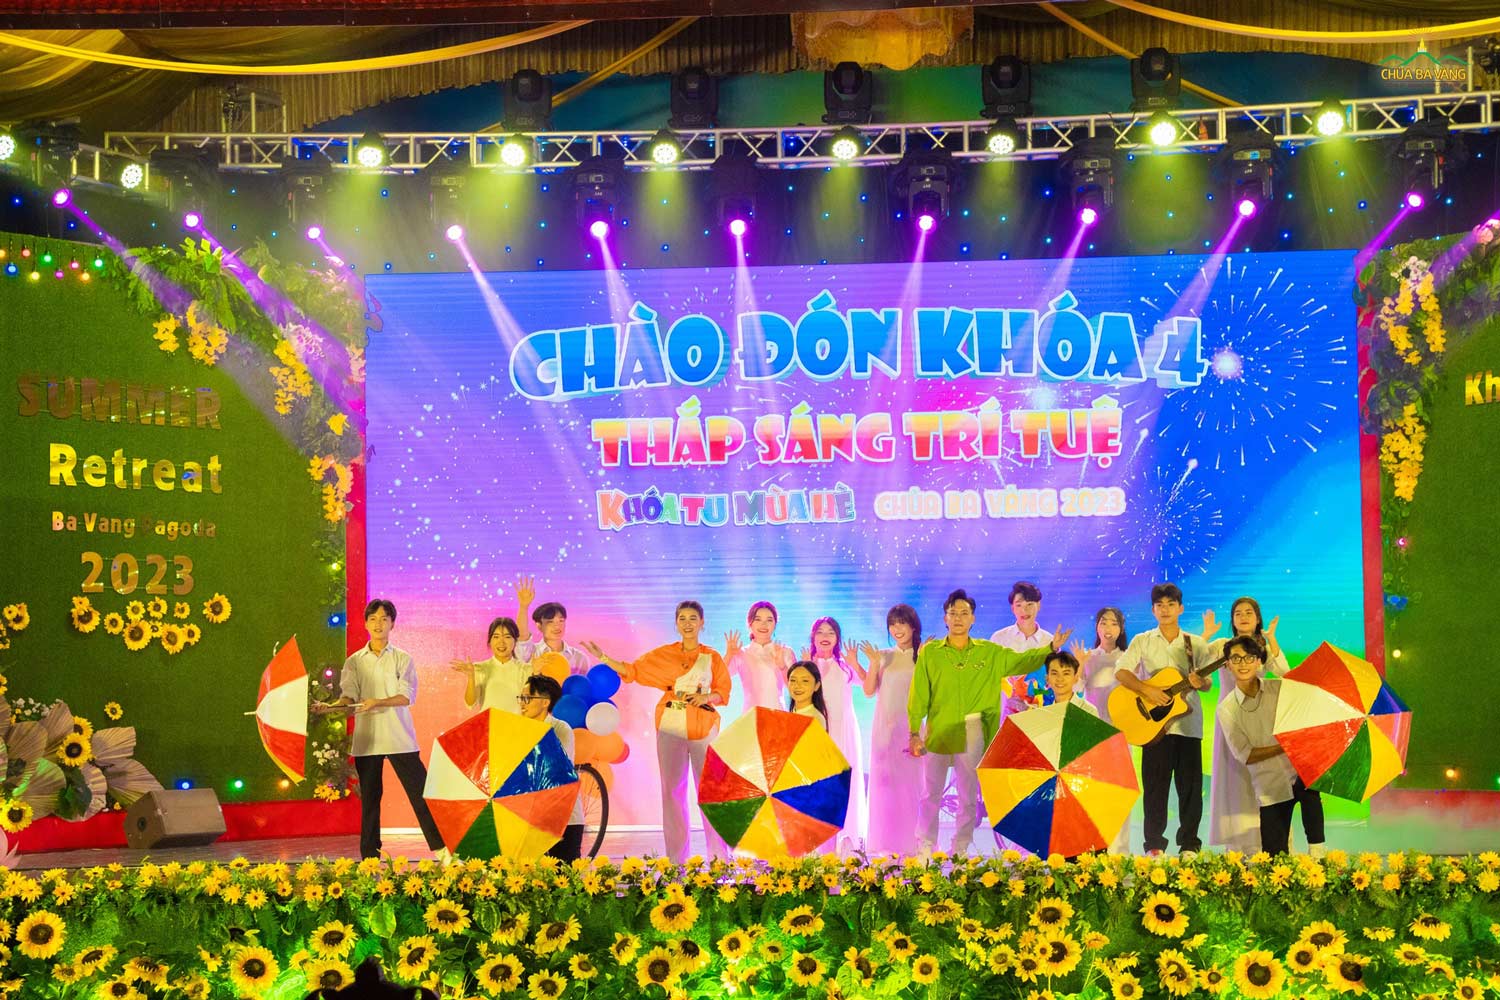 Ca sĩ Minh Ngọc, Đức Thịnh cùng nhóm nhảy Ban tài năng chùa Ba Vàng đã thể hiện xuất sắc tiết mục 